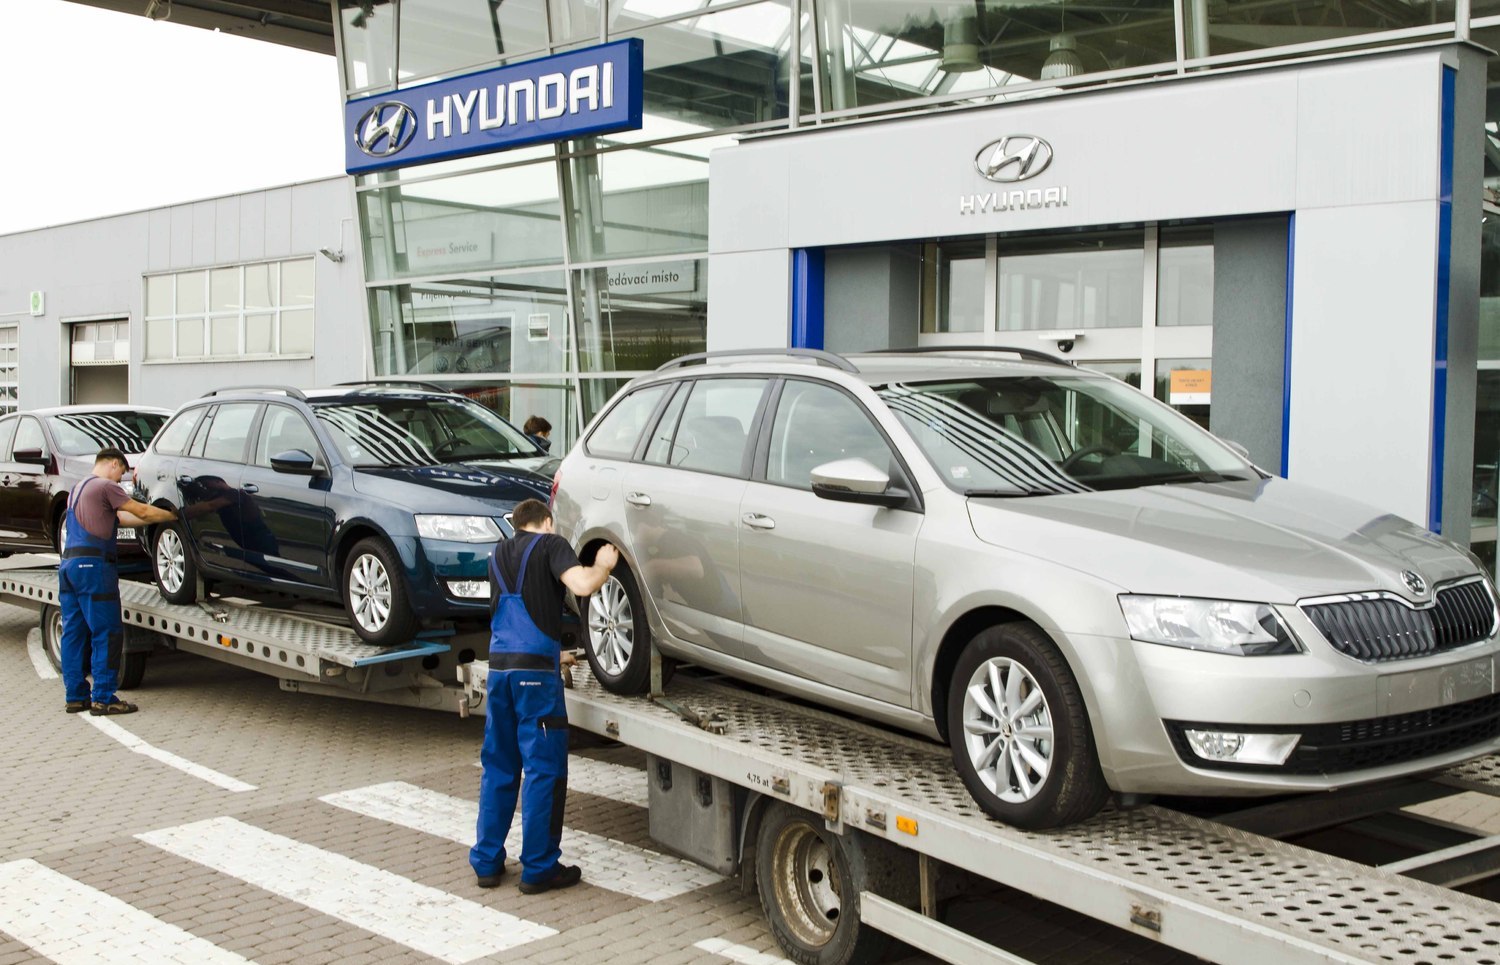 Porovnání vlastní produkce, s vozy největší domácí automobilky, se Hyundai rozhodně nebojí.